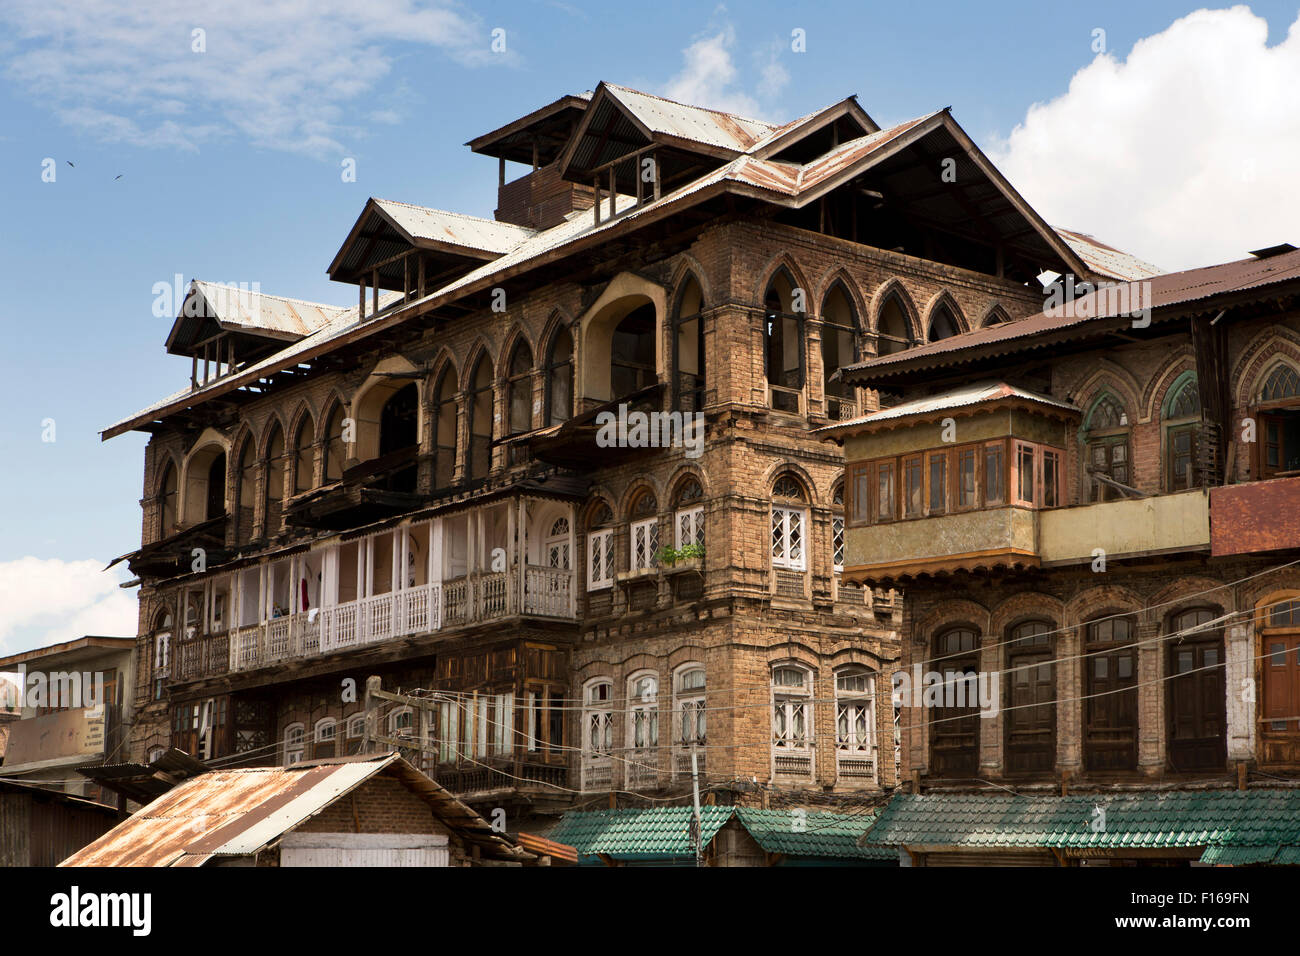 Indien, Jammu & Kaschmir, Srinagar, Altstadt, Bogenfenster Kolonialzeit Gebäude mit Balkonen und gotische obere Stockfoto